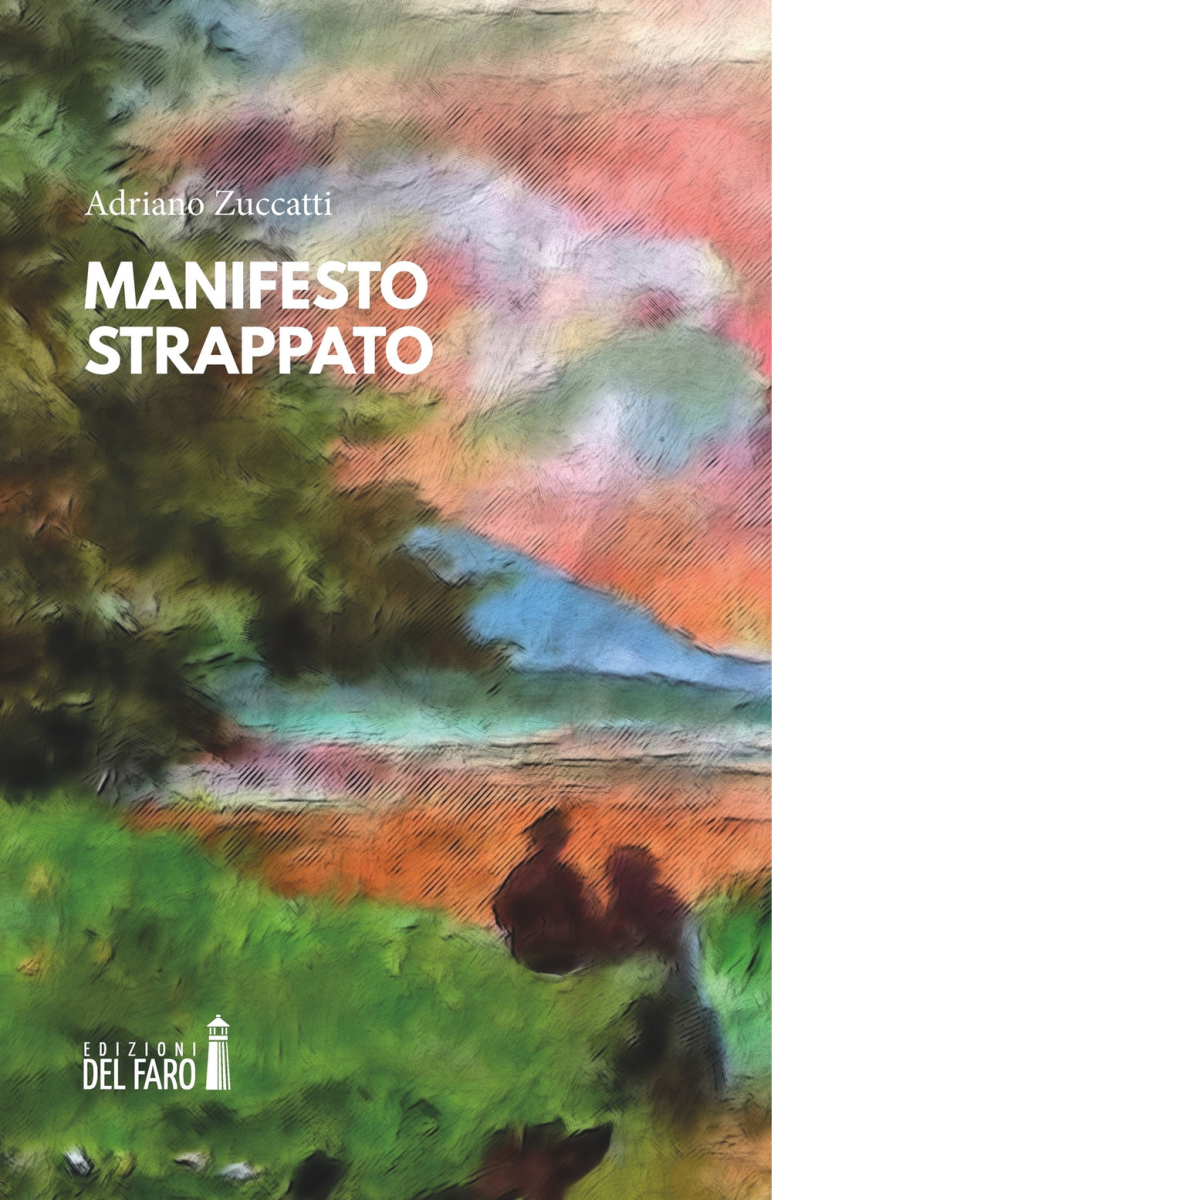 Manifesto strappato di Adriano Zuccatti  - Edizioni del Faro, 2022